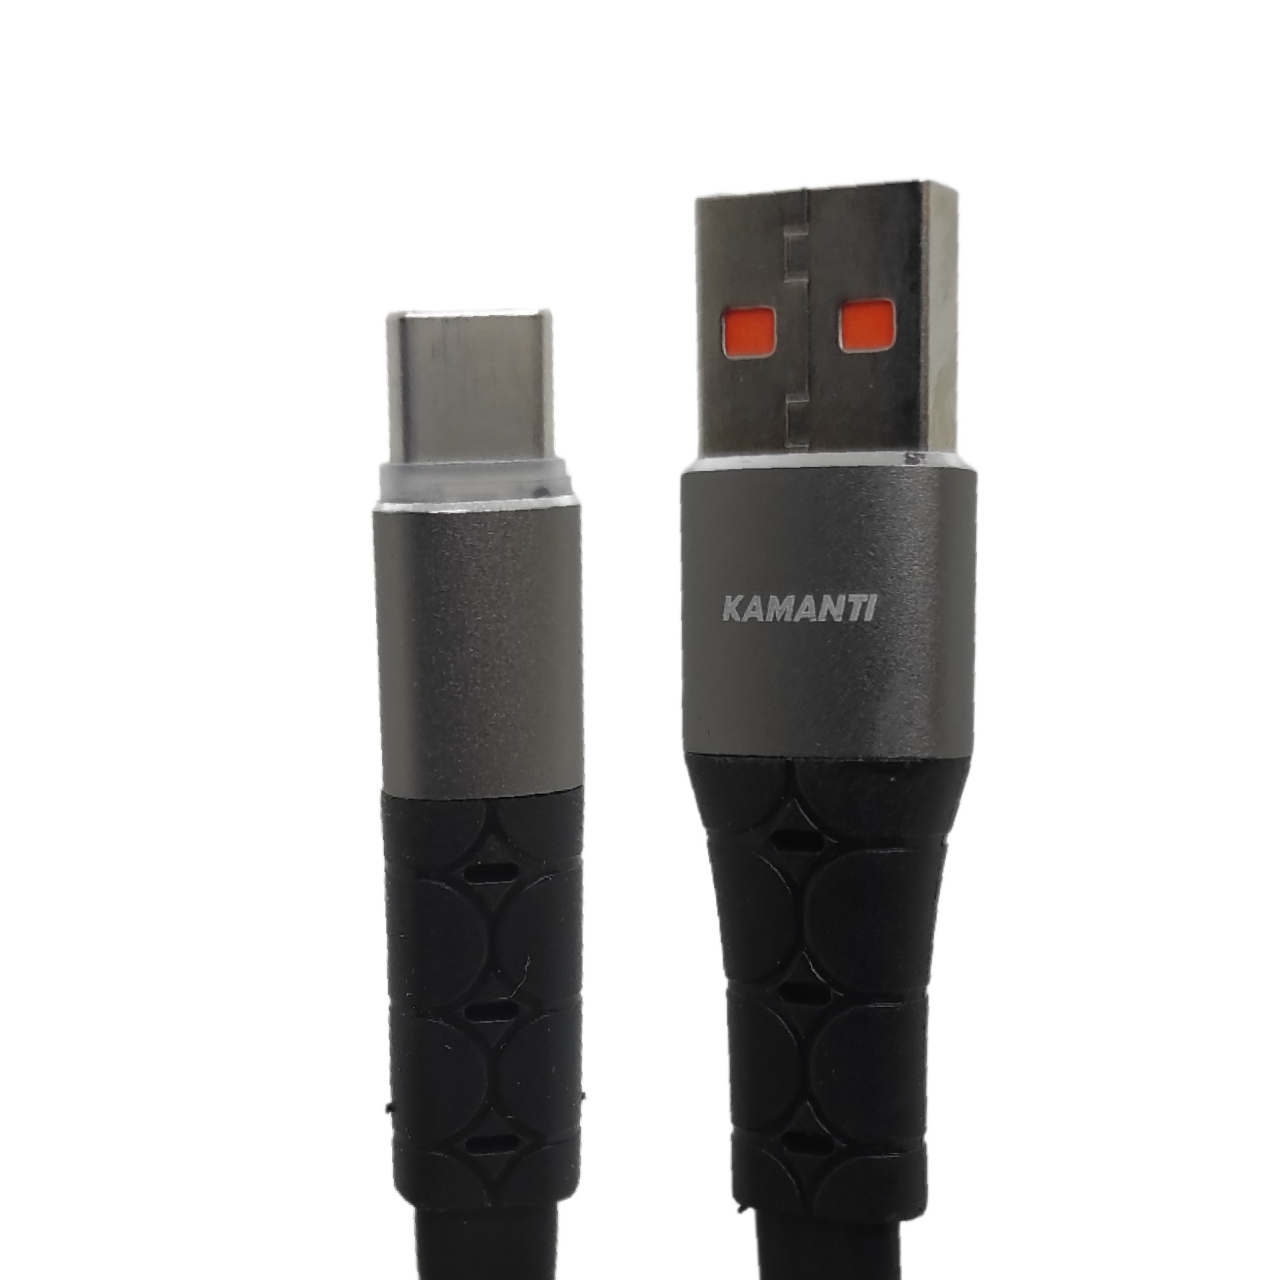 کابل تبدیل USB به USB-C کامانتی مدل EG80 طول 2 متر